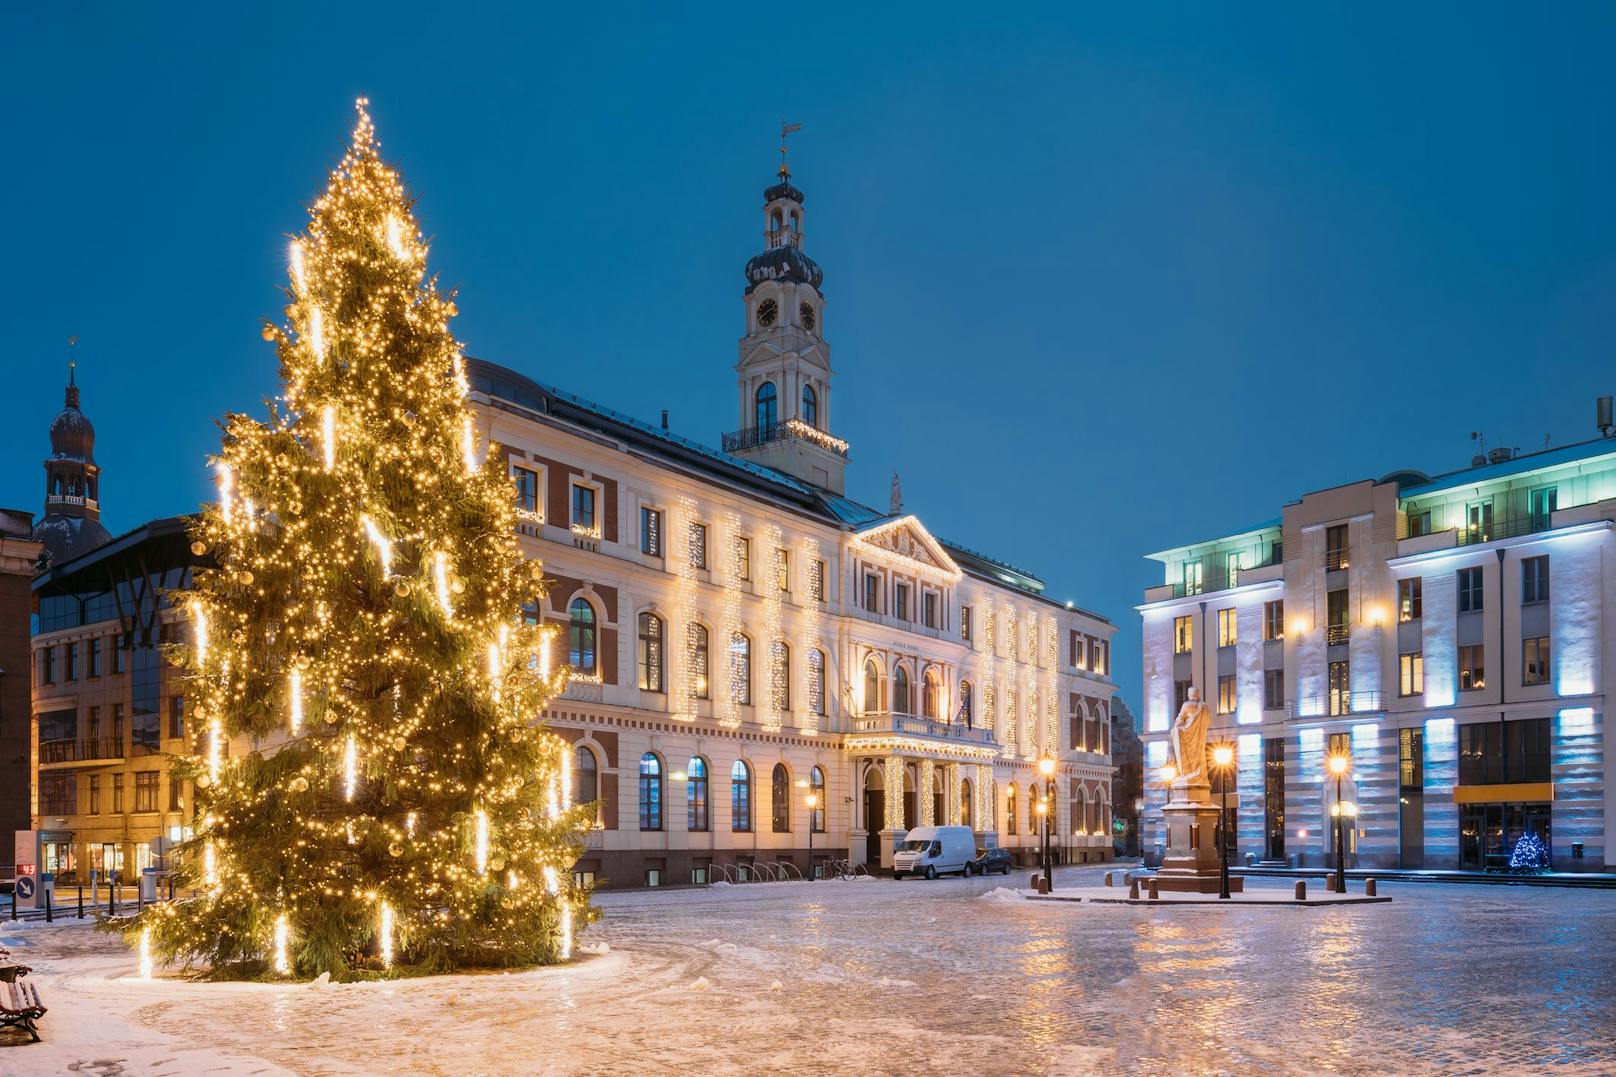 Wer ein echtes Winter-Wunderland sucht, ist in Riga am richtigen Ort.